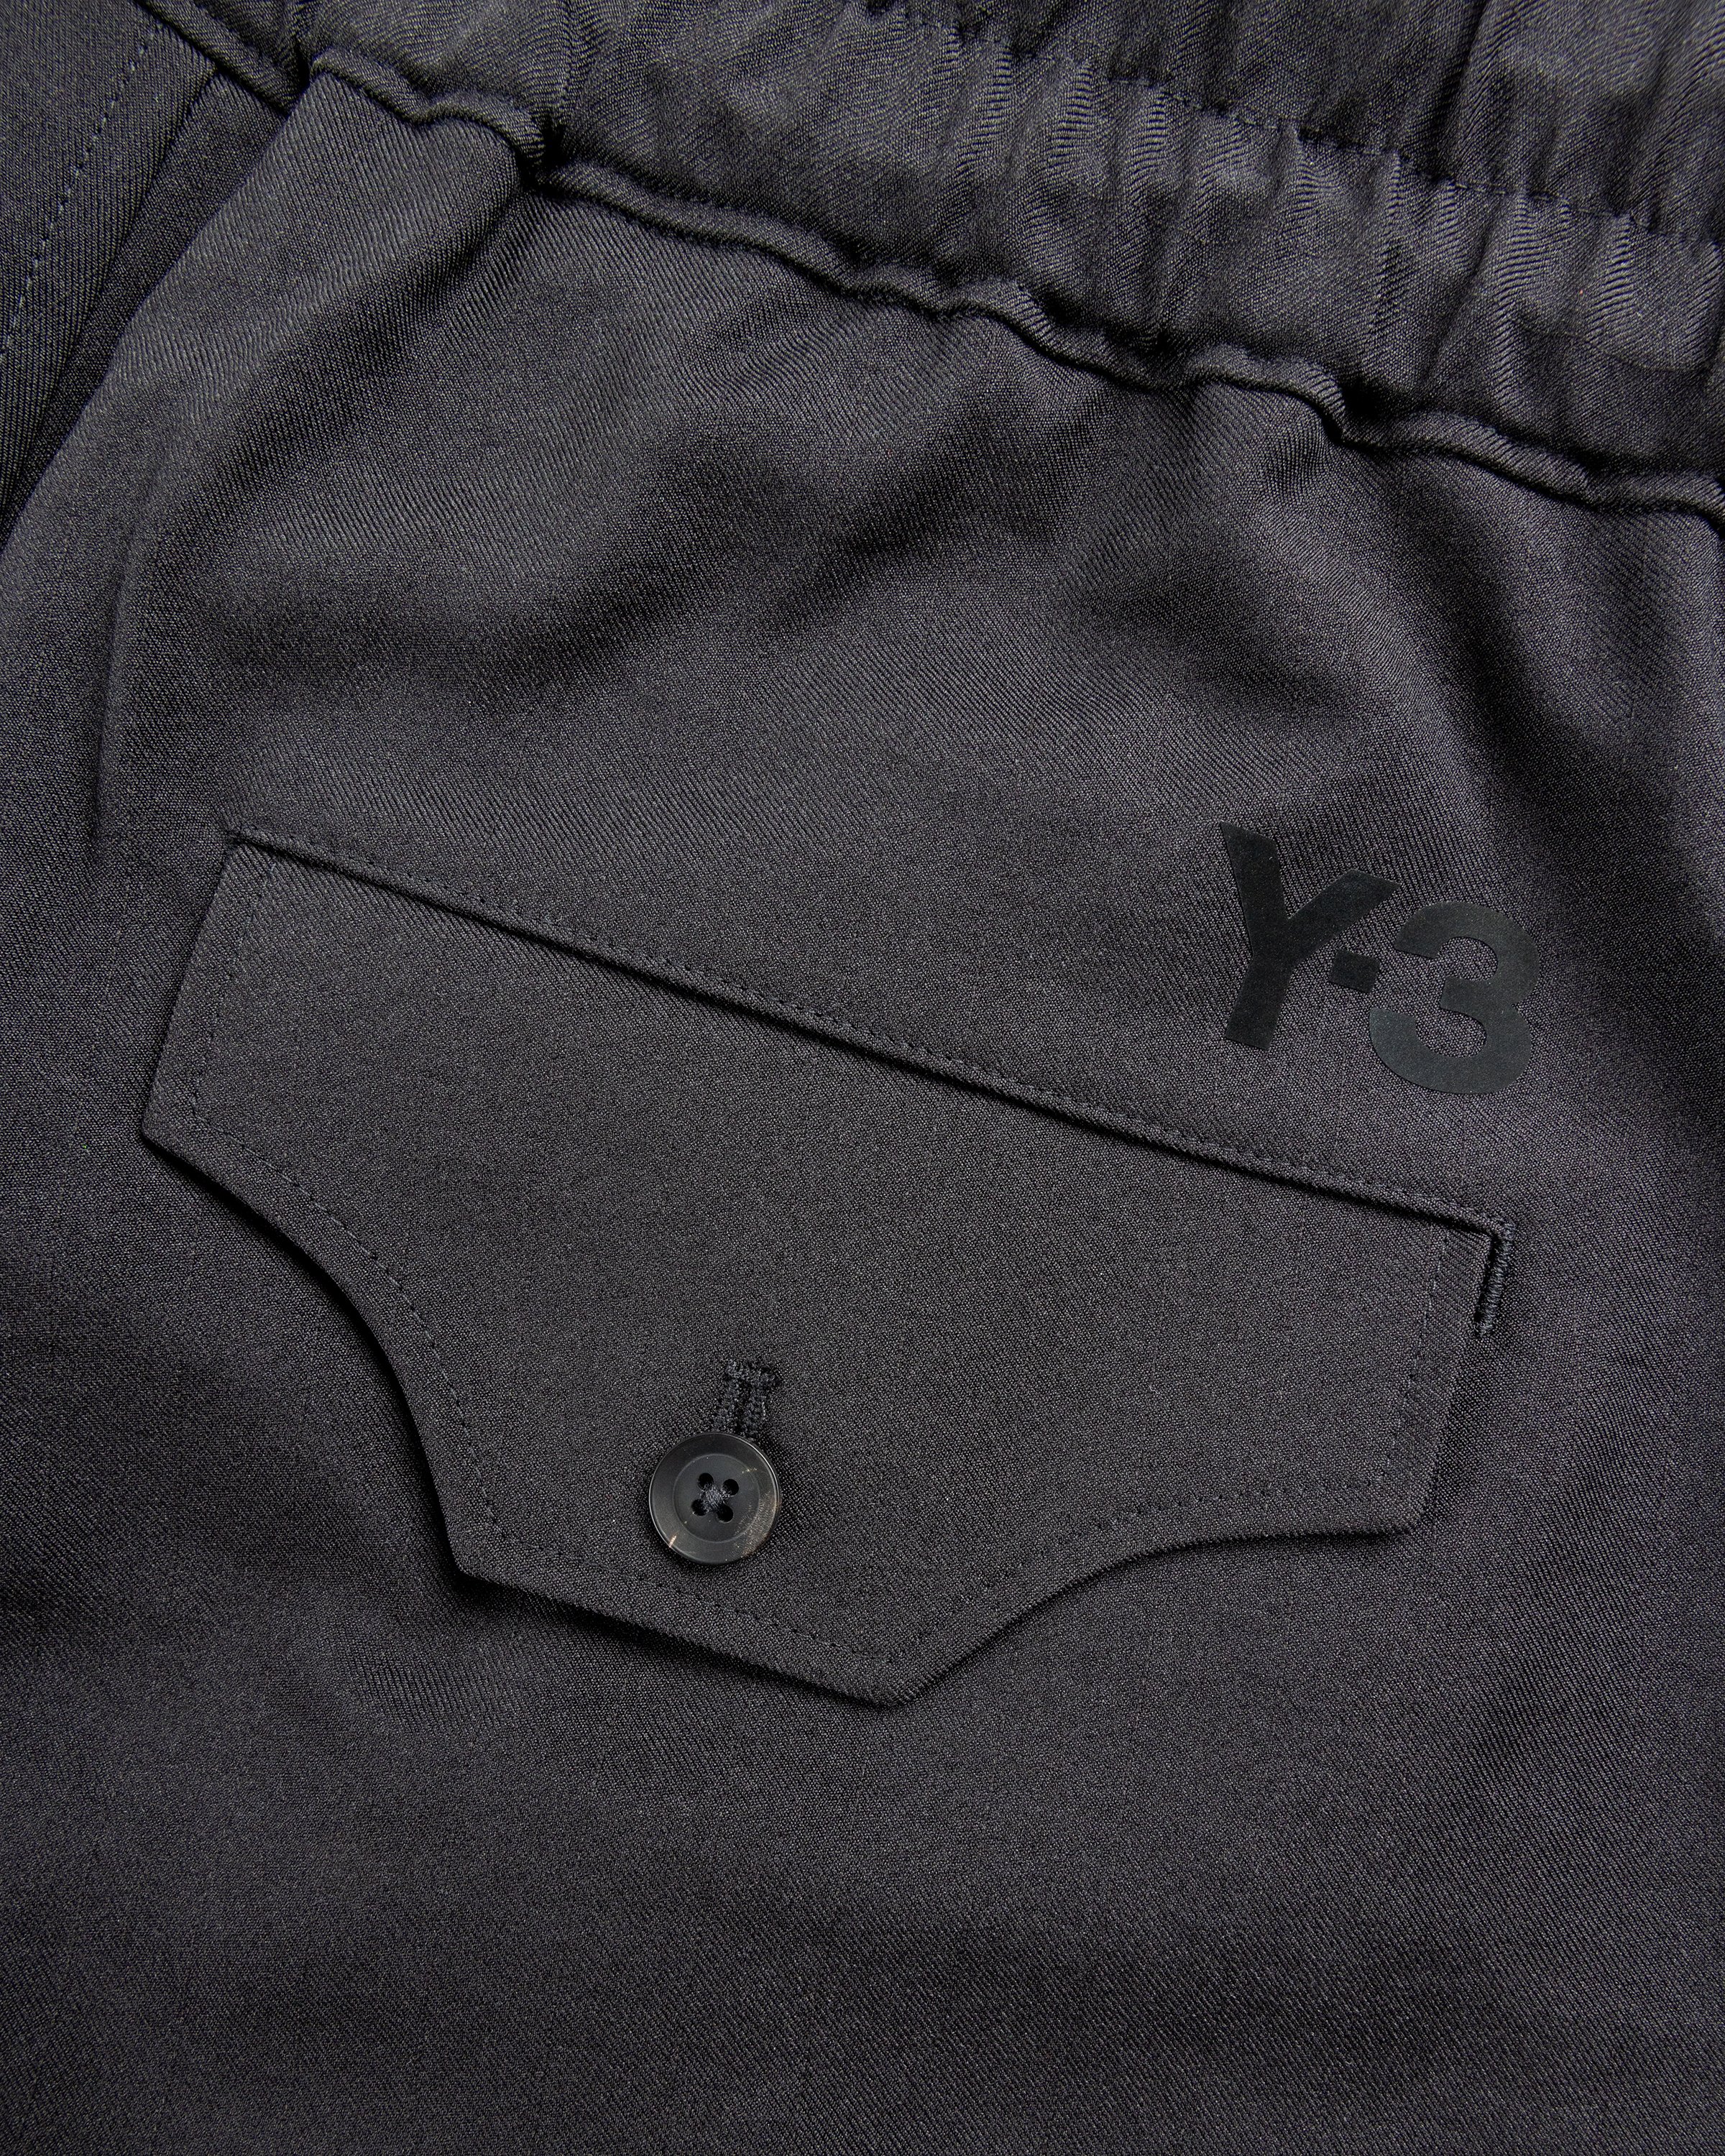 Y-3 - Sp Uni Shorts Black - Clothing - Black - Image 7